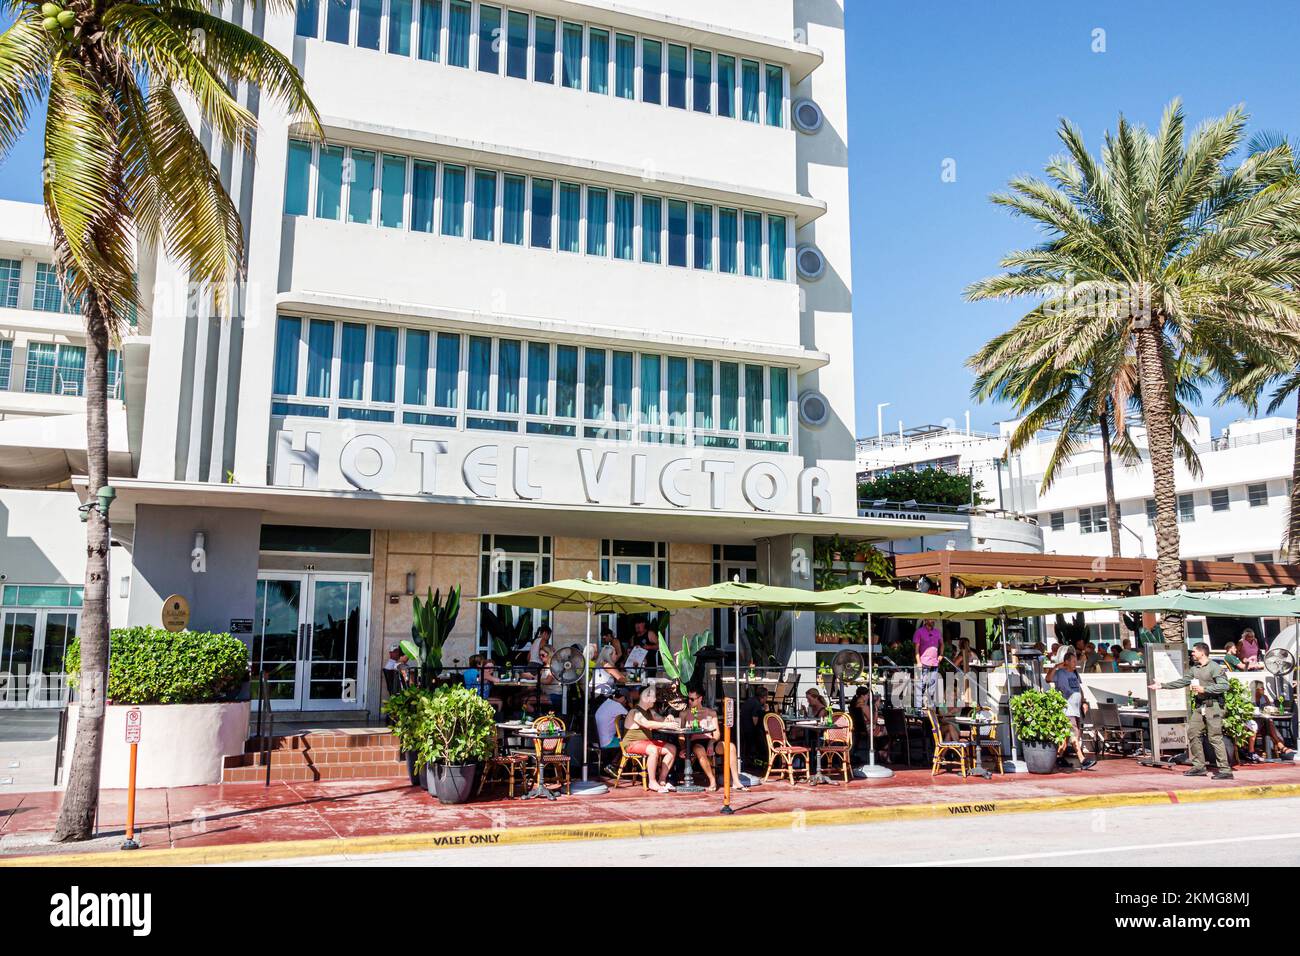 Miami Beach Floride, South Beach Art Deco District Ocean Drive, Hotel Victor restaurant restaurants dîner à l'extérieur café décontracté cafés bistro bist Banque D'Images